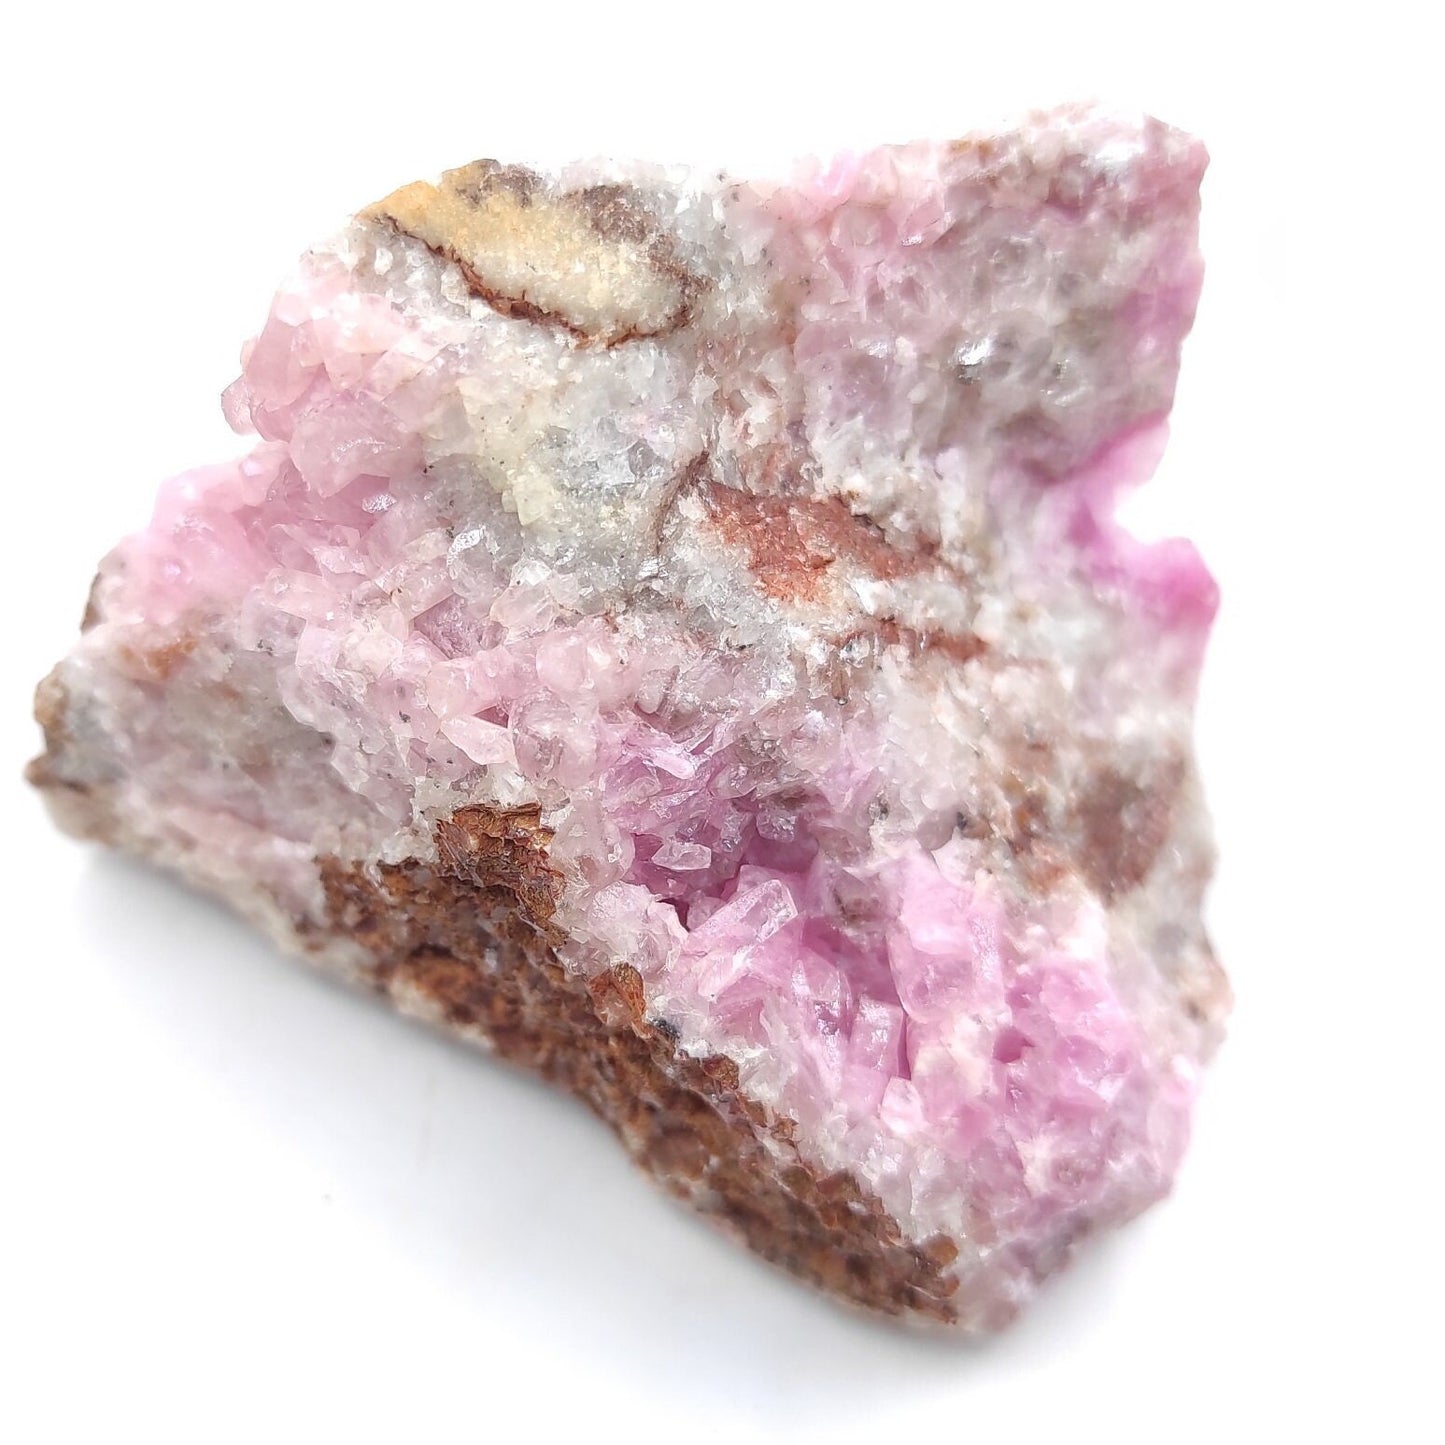 125g Cobalto Calcite - Pink Cobalt Calcite from Bou Azzer, Morocco - Salrose Stone - Cobaltocalcite Mineral Specimen - Pink Calcite Crystal